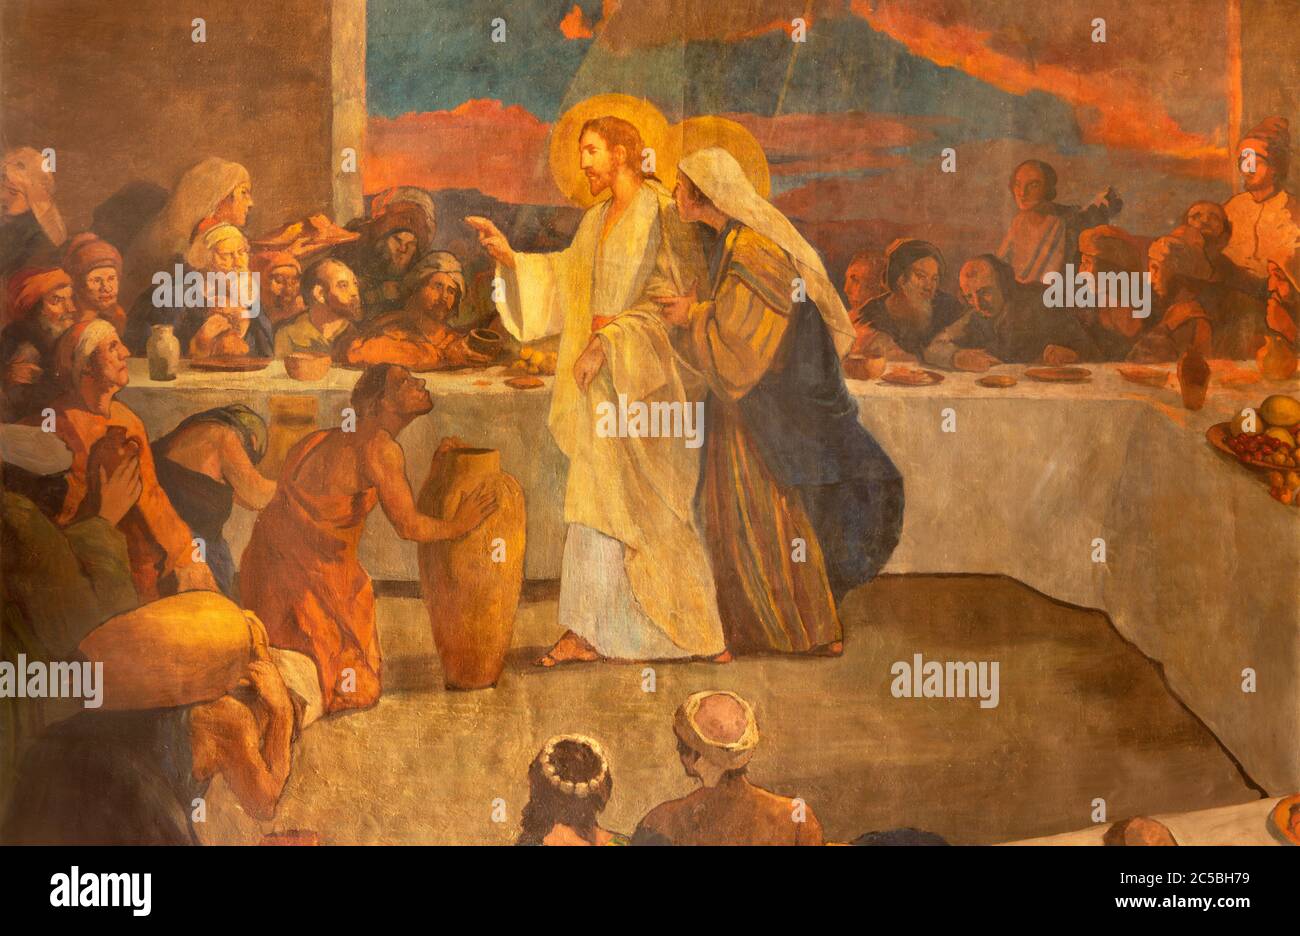 BARCELLONA, SPAGNA - 3 MARZO 2020: Il dipinto moderno della Gloria del cuore di Gesù nella chiesa Santuario Nuestra Senora del Sagrado Corazon. Foto Stock